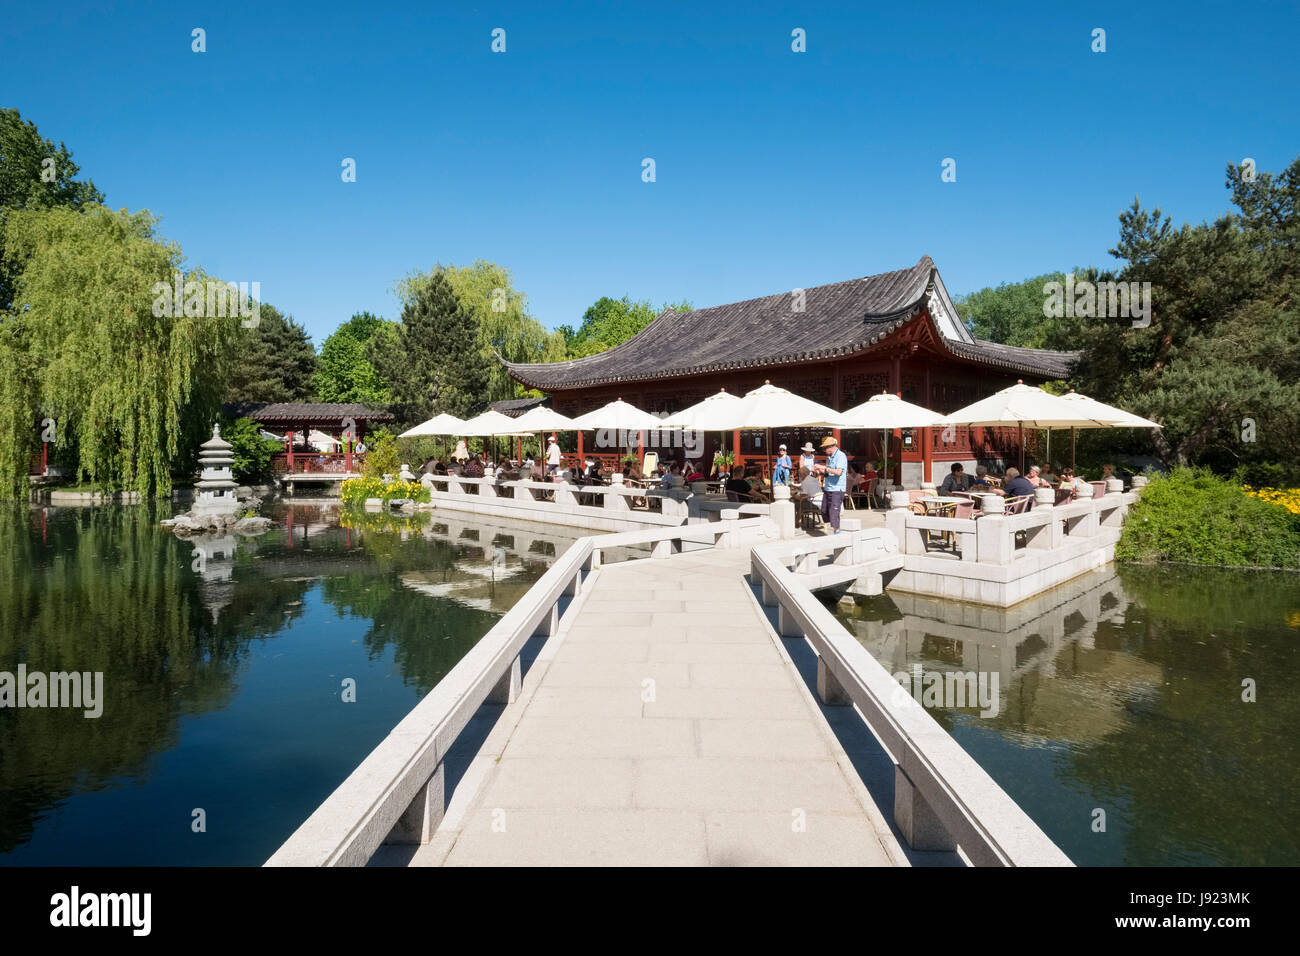 Chinese Garden in Gärten der Welt Teil des IGA 2017 internationales Gartenfestival (internationale Garten Ausstellung) in Berlin, Deutschland Stockfoto